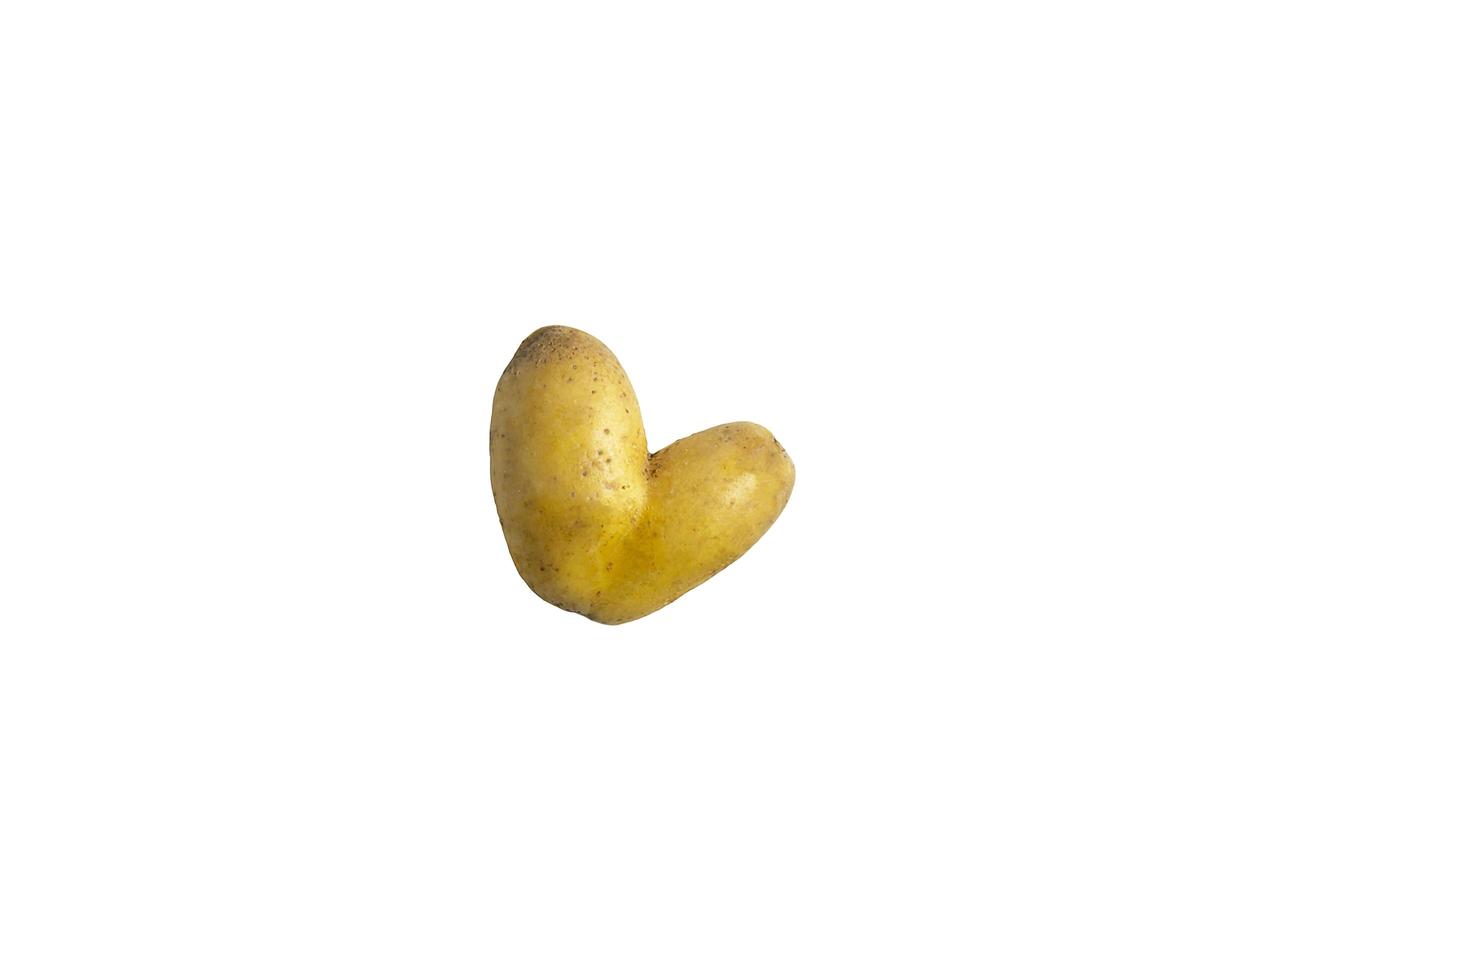 patate crude a forma di cuore su sfondo bianco foto